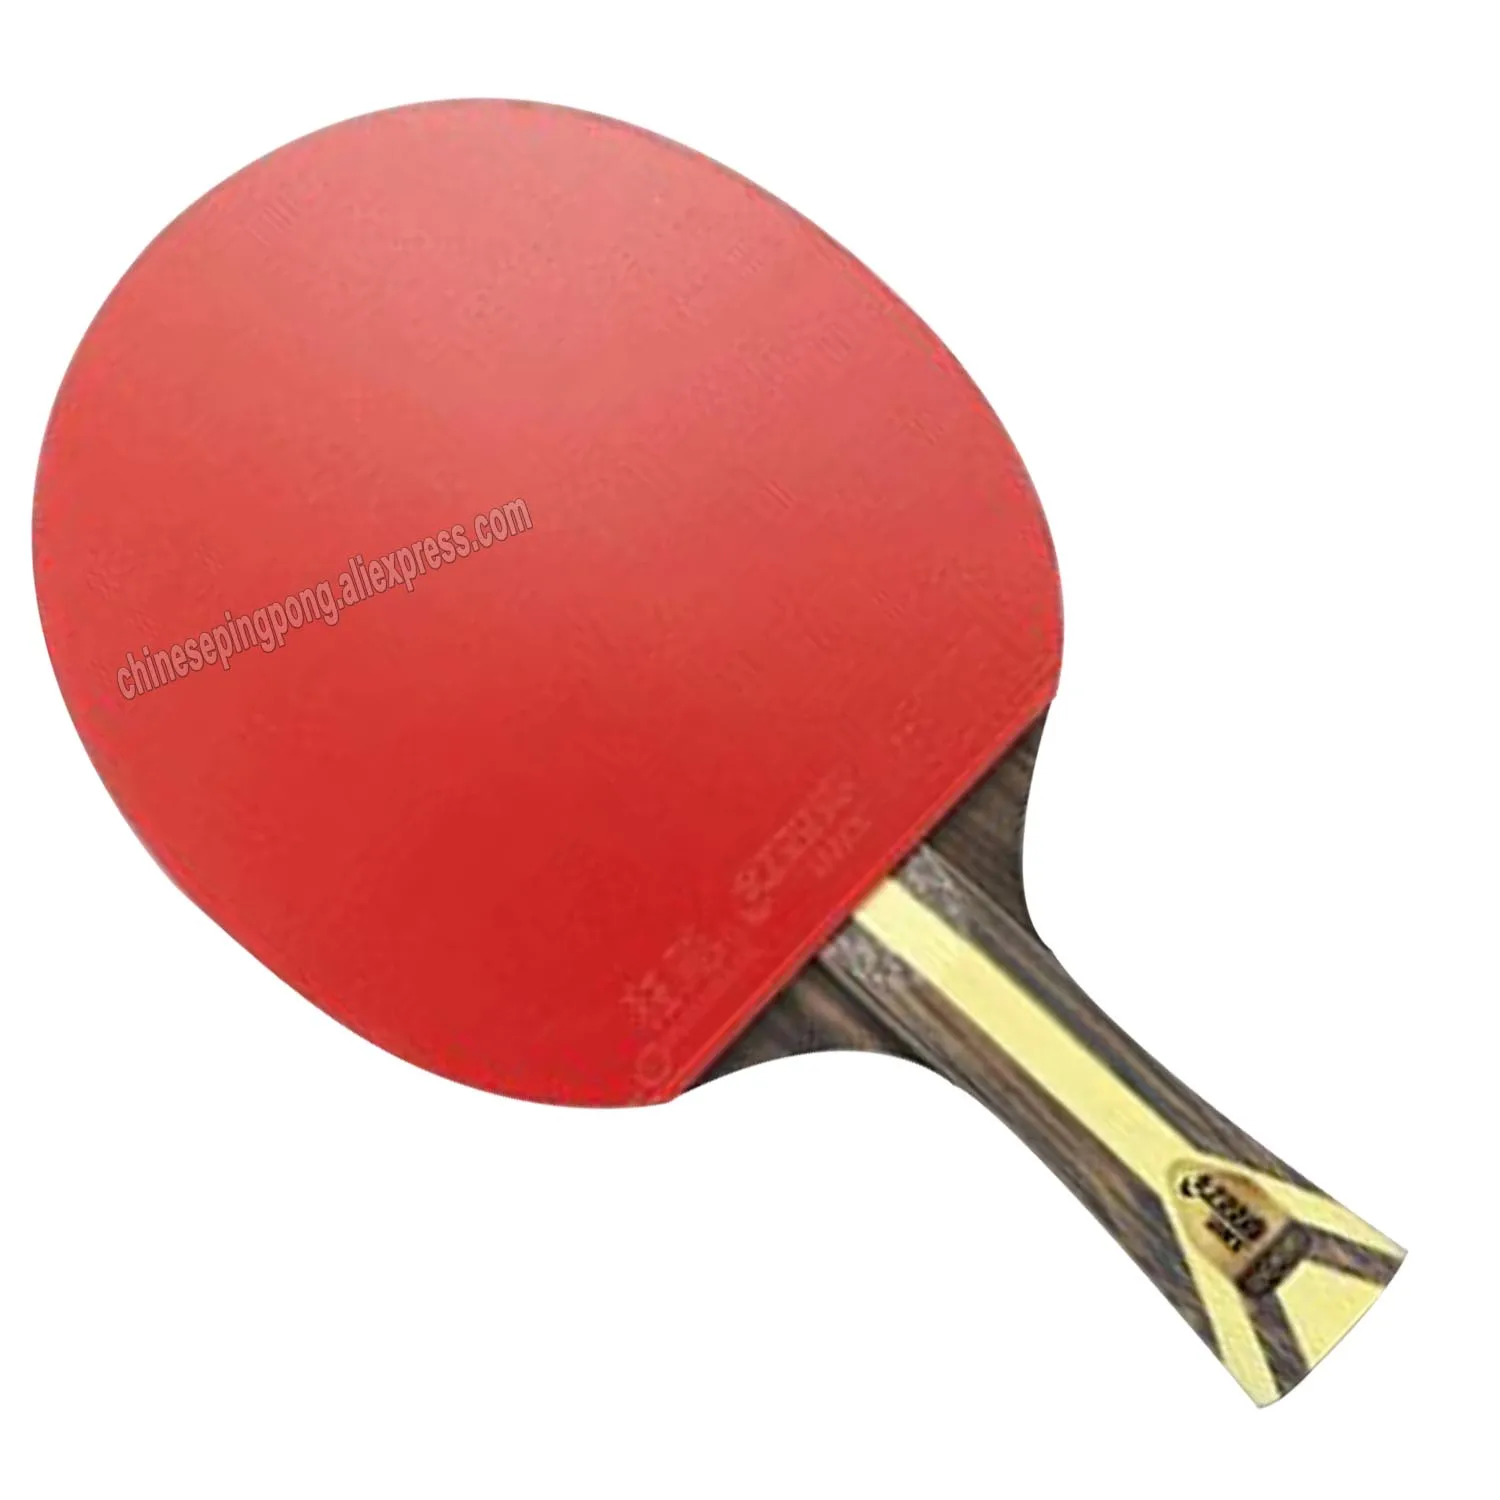 Оригинальная Профессиональная ракетка для настольного тенниса DHS 9 star 9002/Ракетка для пинг-понга/бита для настольного тенниса